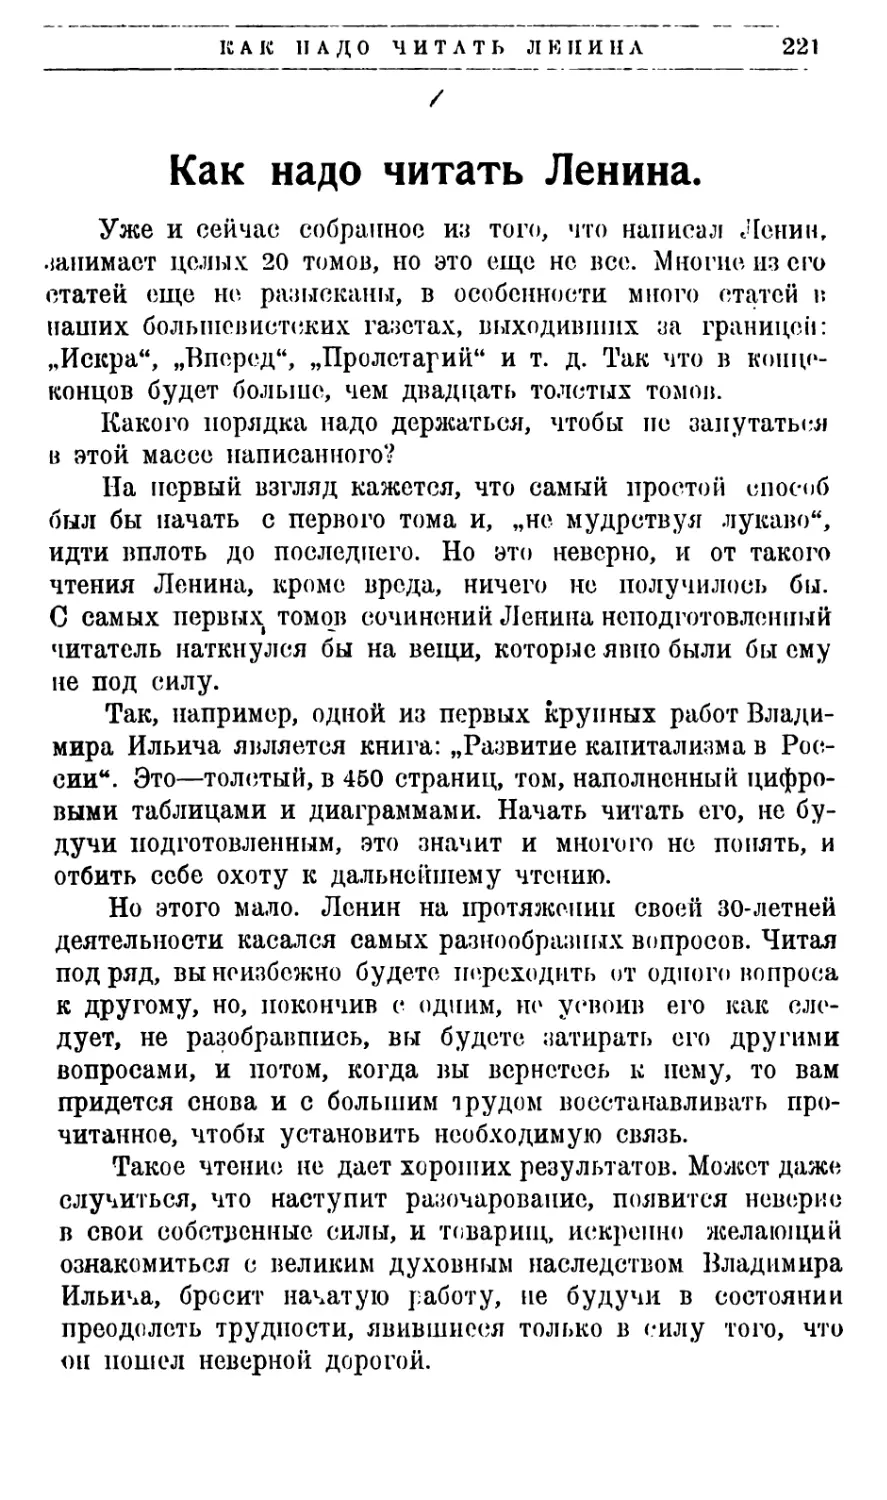 В. Лосев — Как надо читать Ленина